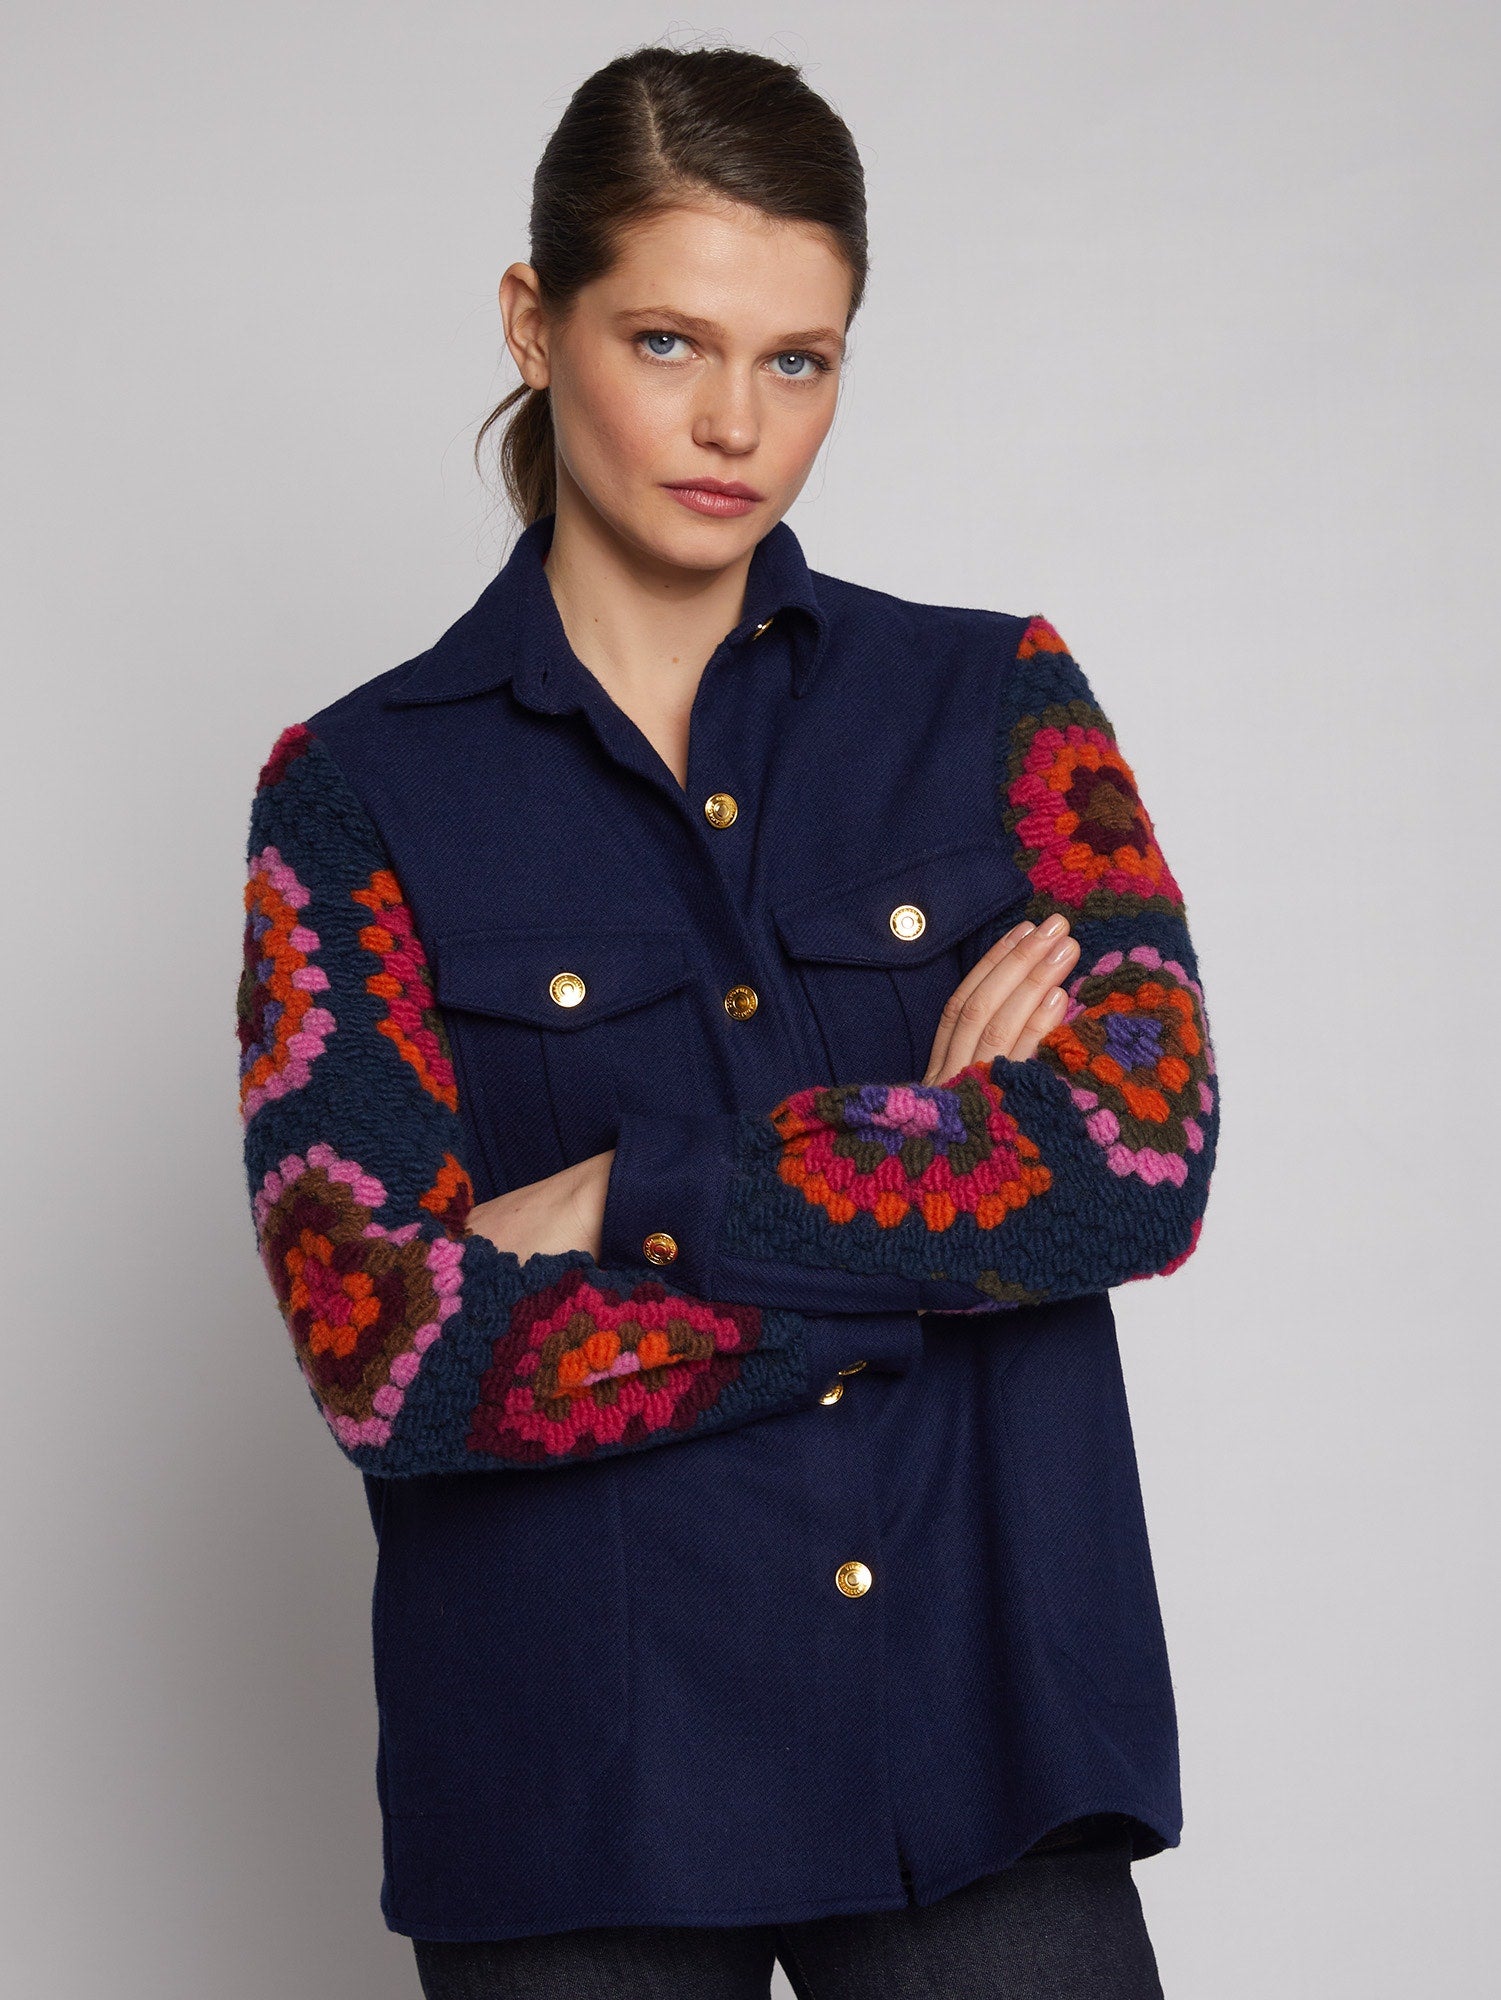 Federica Jacket in Crochet Design in Navy